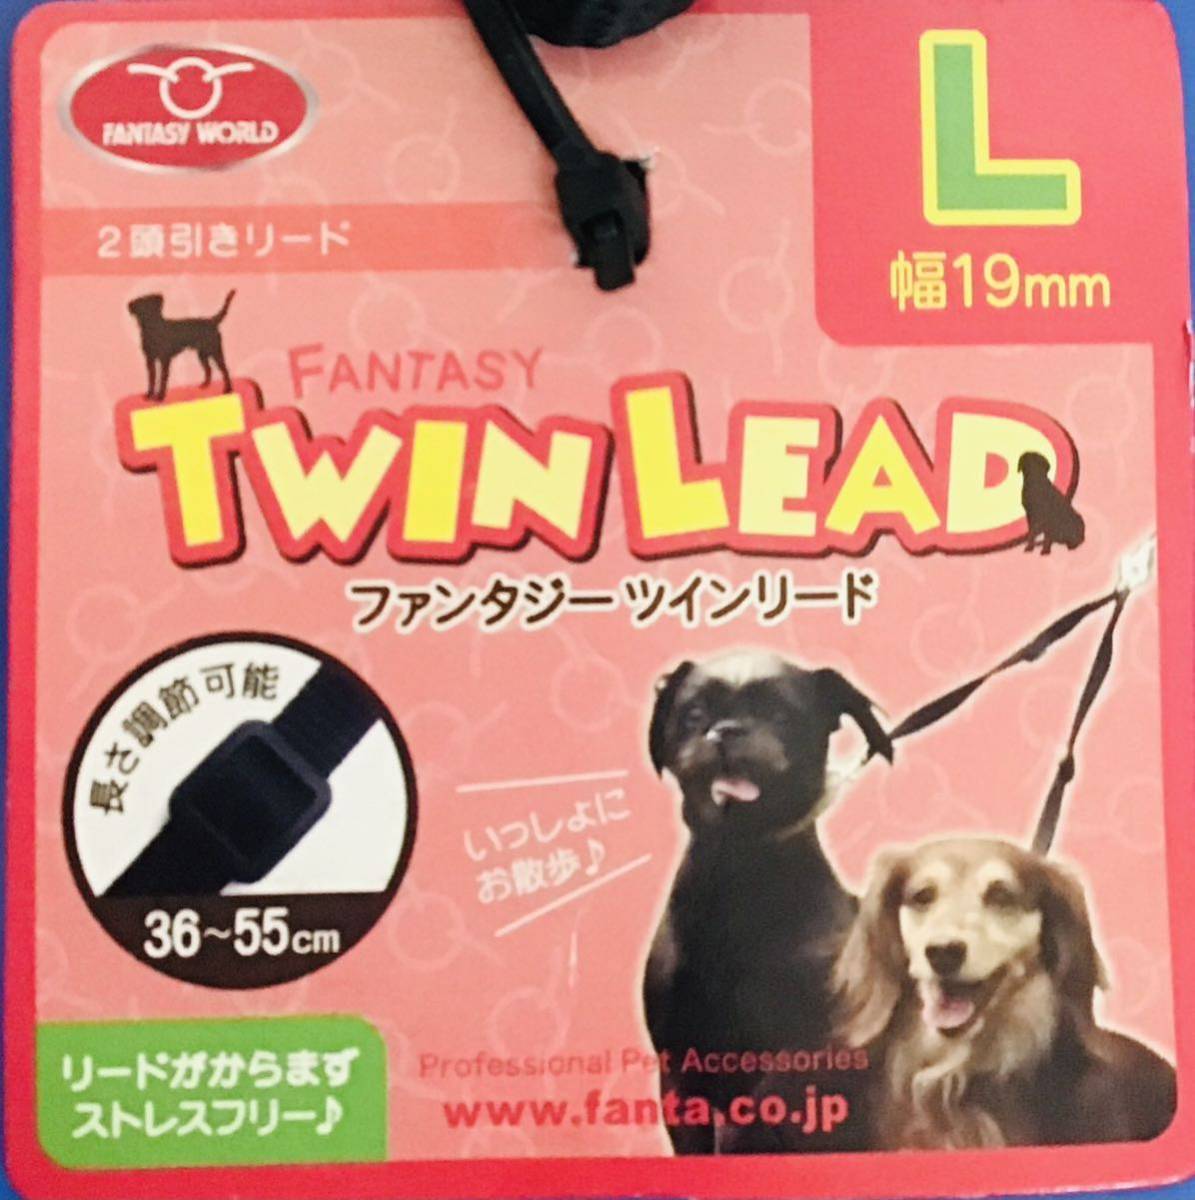 2 комплект есть перевод фэнтези world twin Lead L ⑩028 средний ~ для больших собак много голова ... предметы первой необходимости 2 голова вместе . прогулка возможен Lead 4995723401028